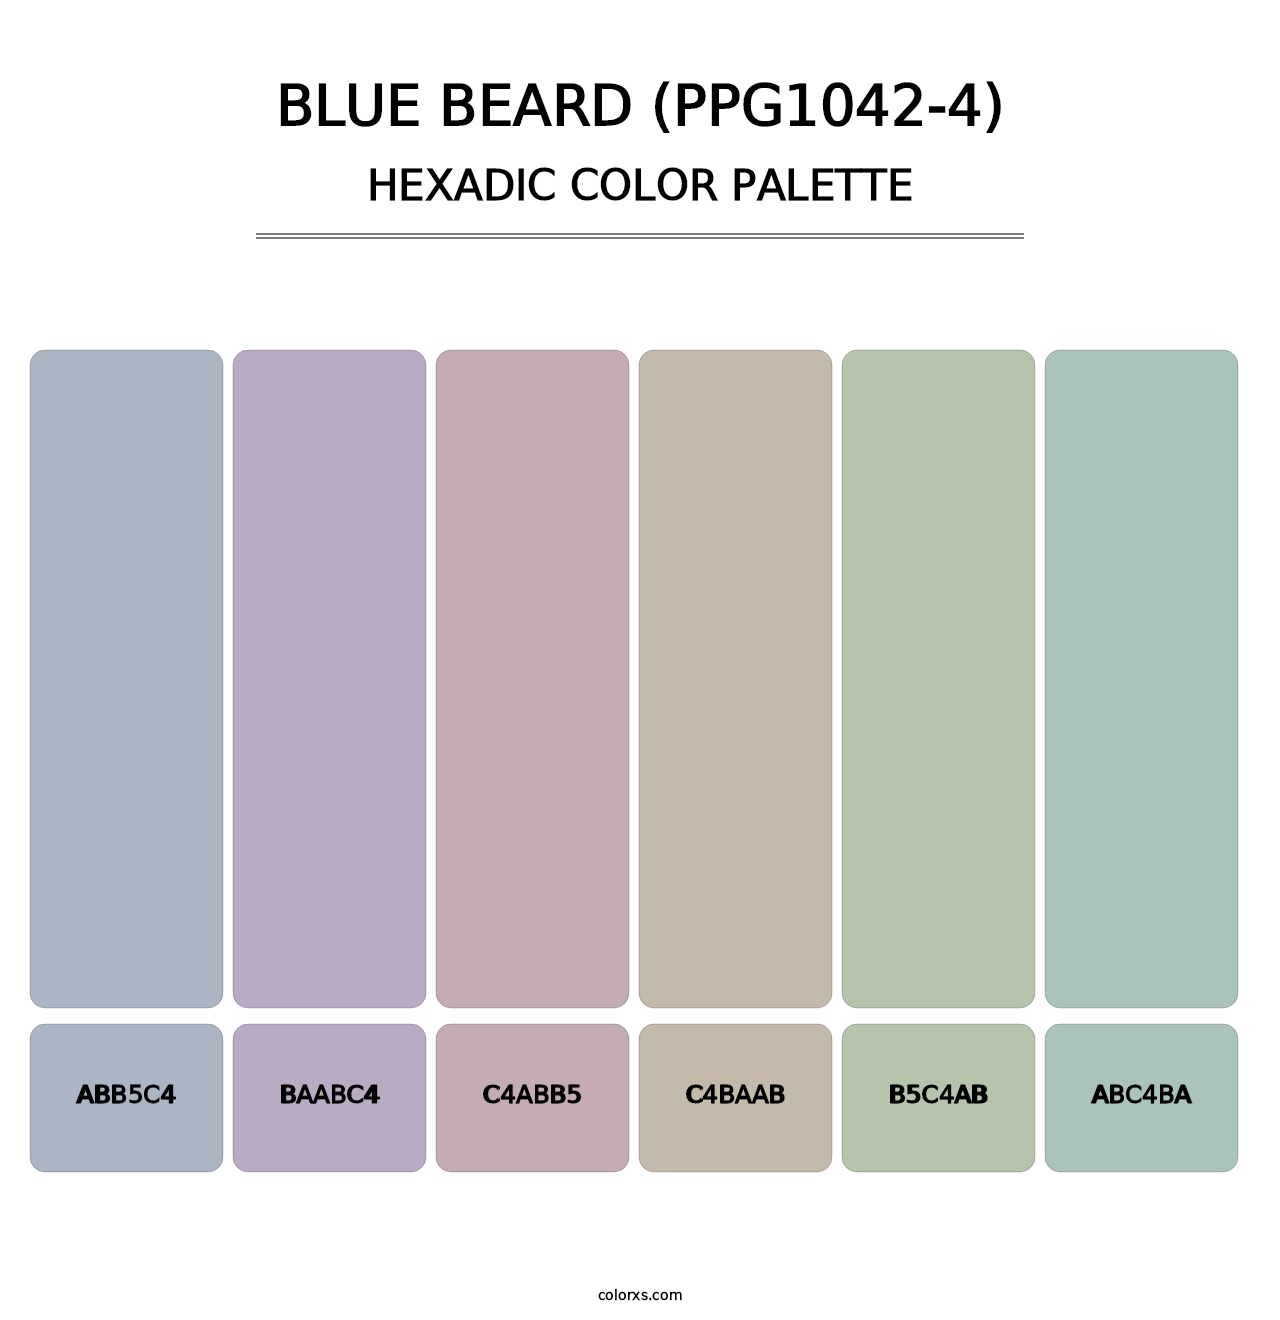 Blue Beard (PPG1042-4) - Hexadic Color Palette